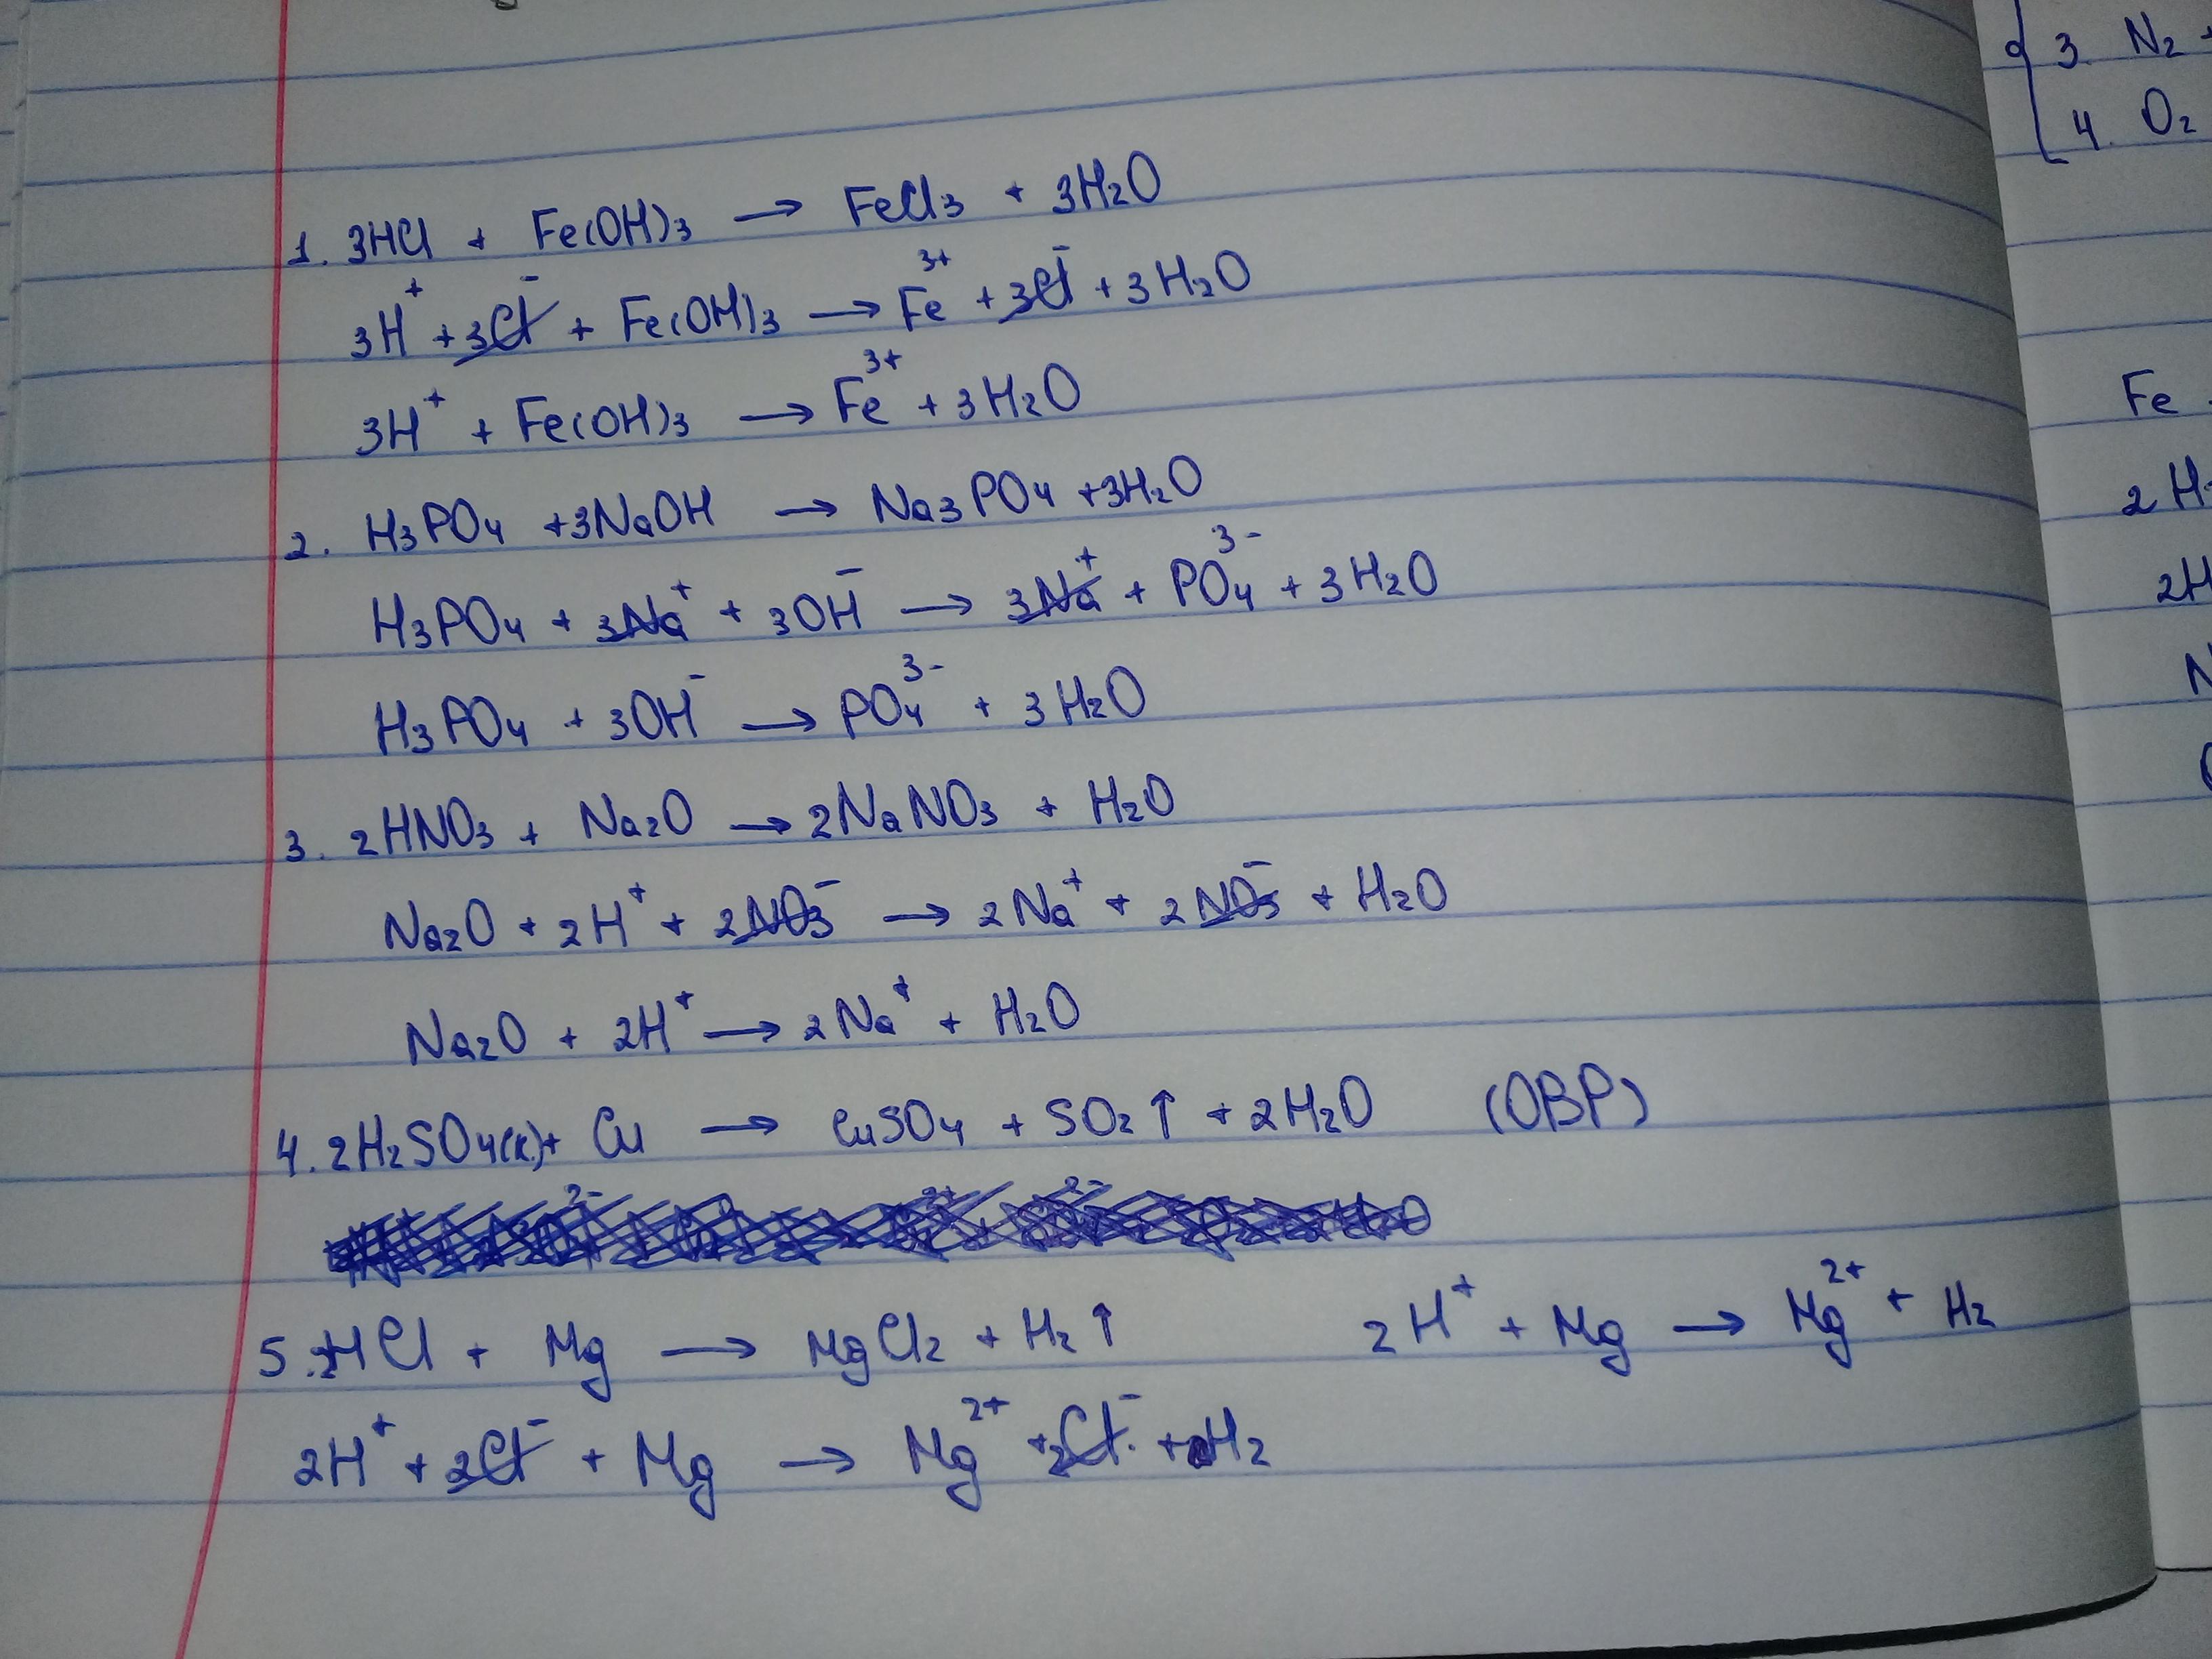 Cu so4 k oh. Fe Oh 3 h2so4 ионное уравнение. Fe Oh 2 h2so4 закончить уравнение реакции. Уравнения возможных реакций h3po4. Закончить уравнения реакций al2o3+HCL.